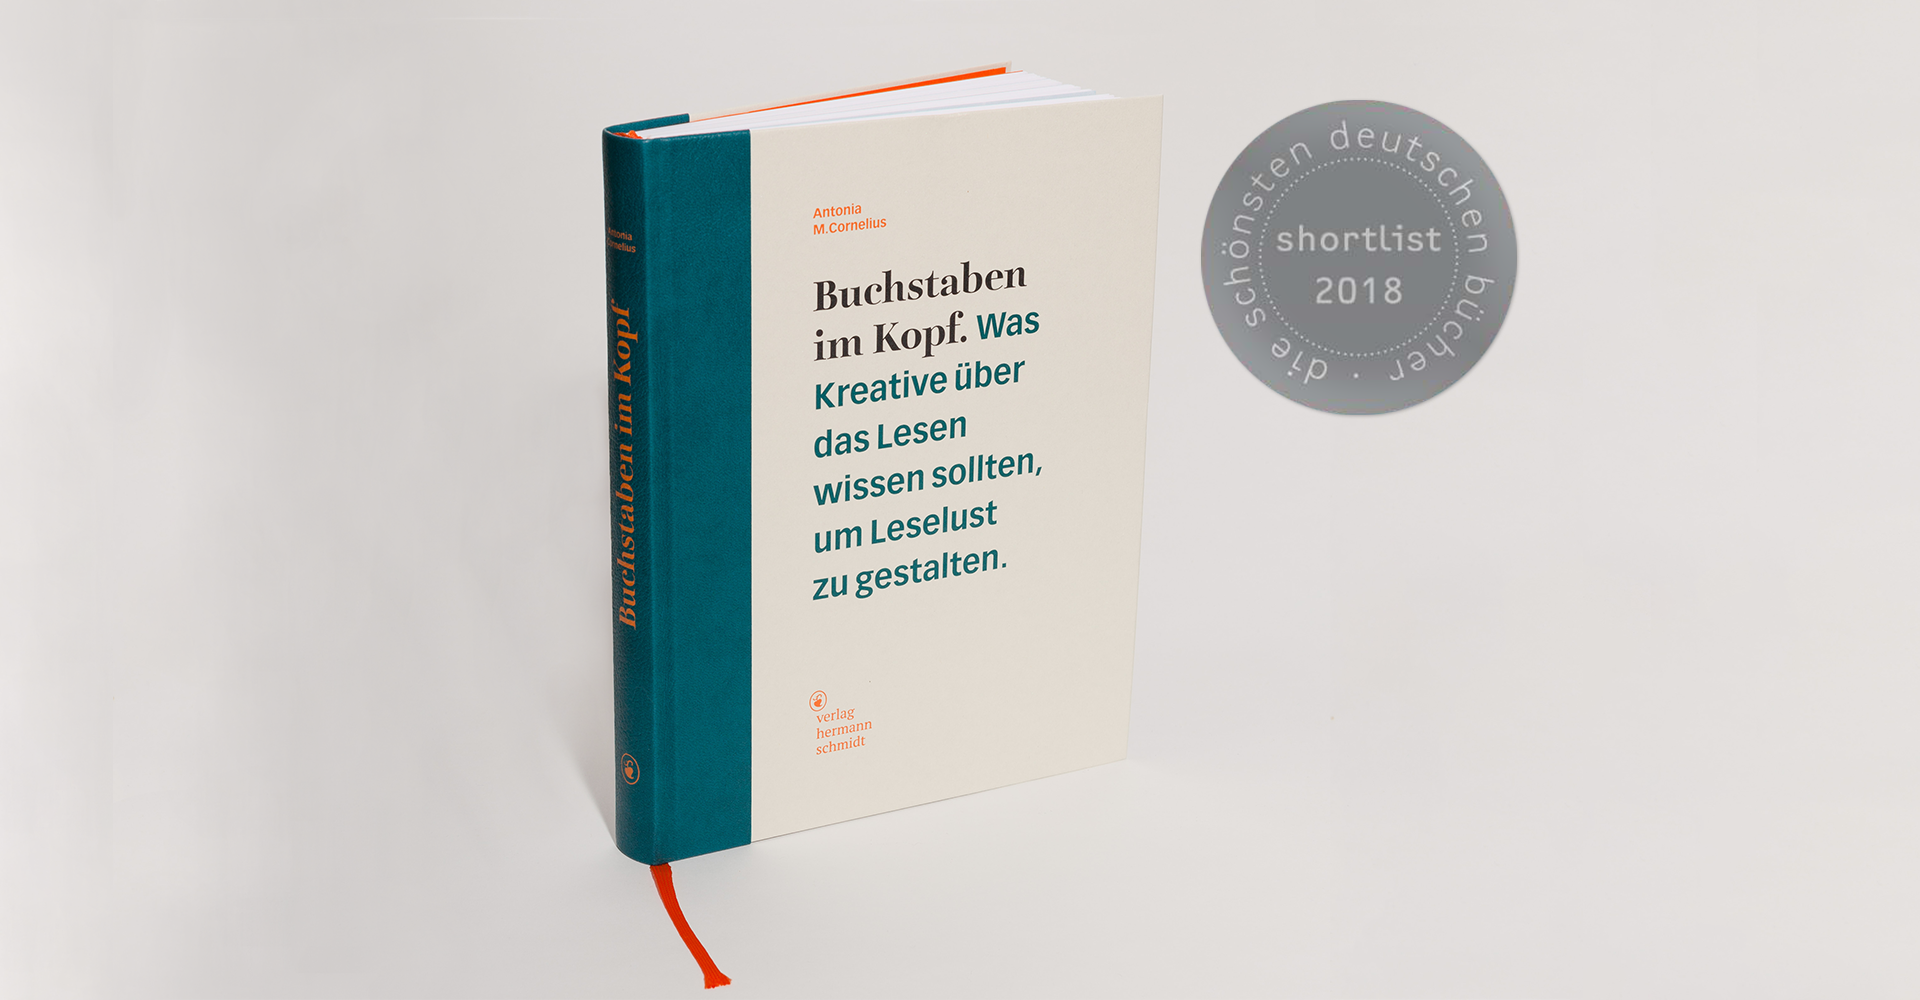 Antonia M. Cornelius: Buchstaben im Kopf. Kompendium. Shortlist Schönste Deutsche Bücher